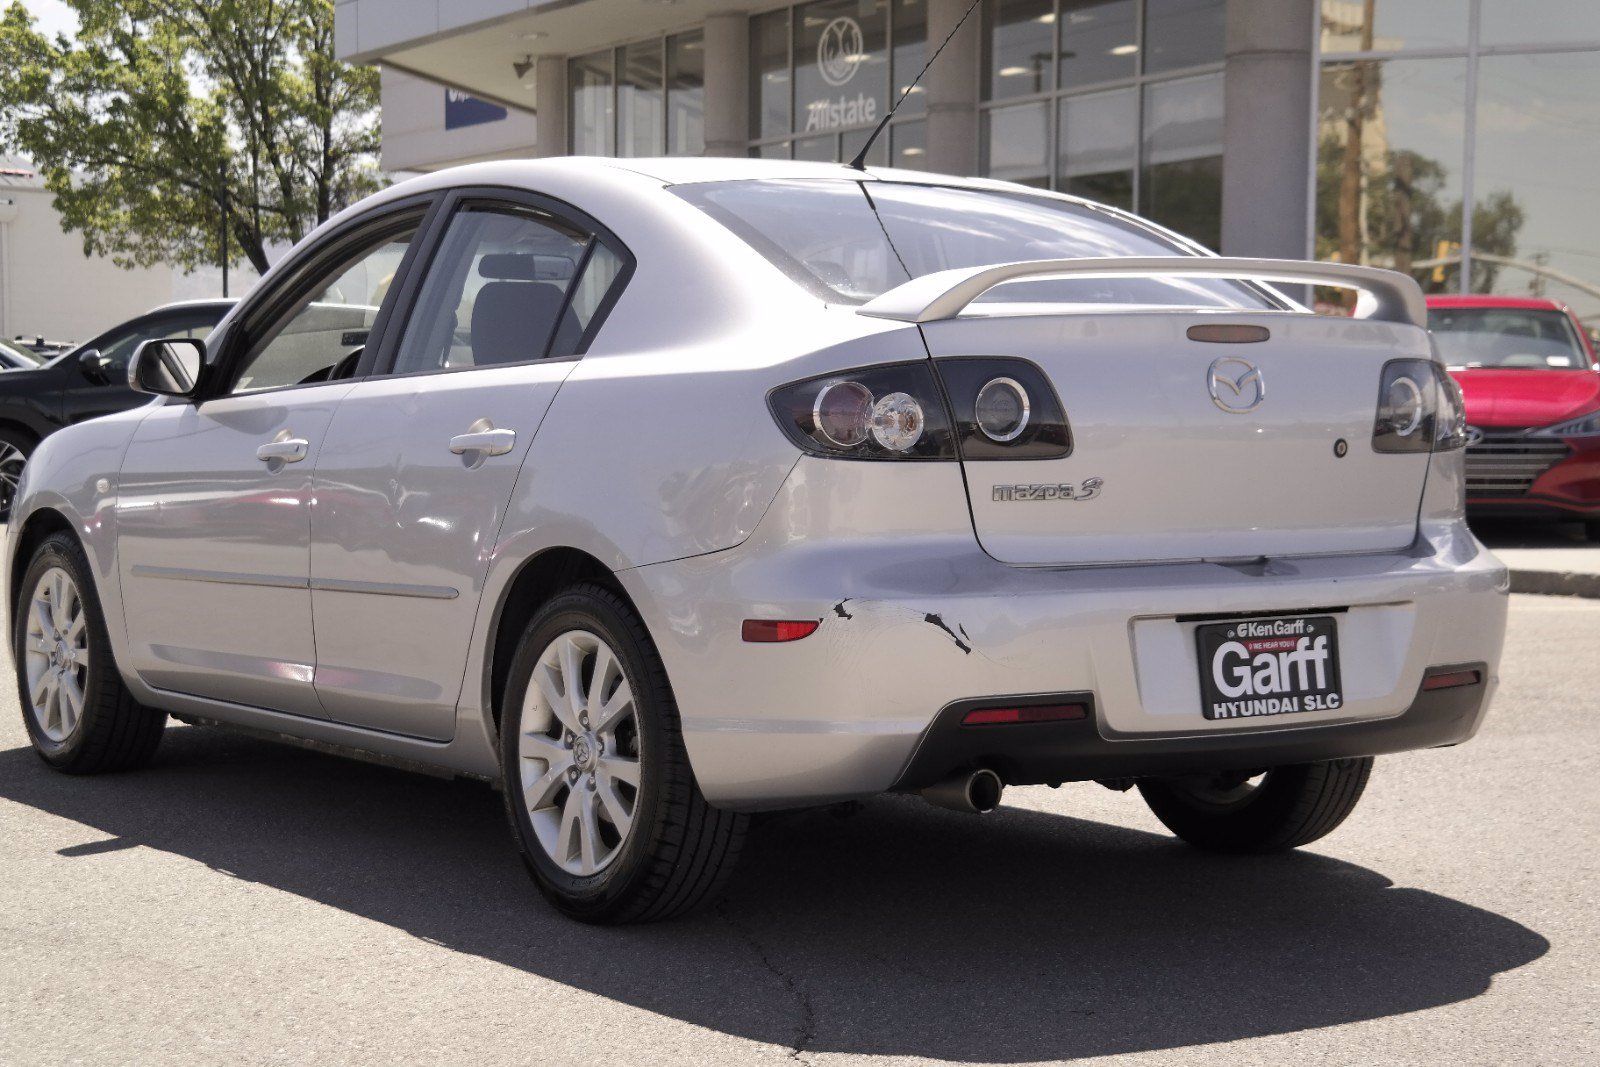 PreOwned 2007 Mazda Mazda3 i Touring 4dr Car in Salt Lake